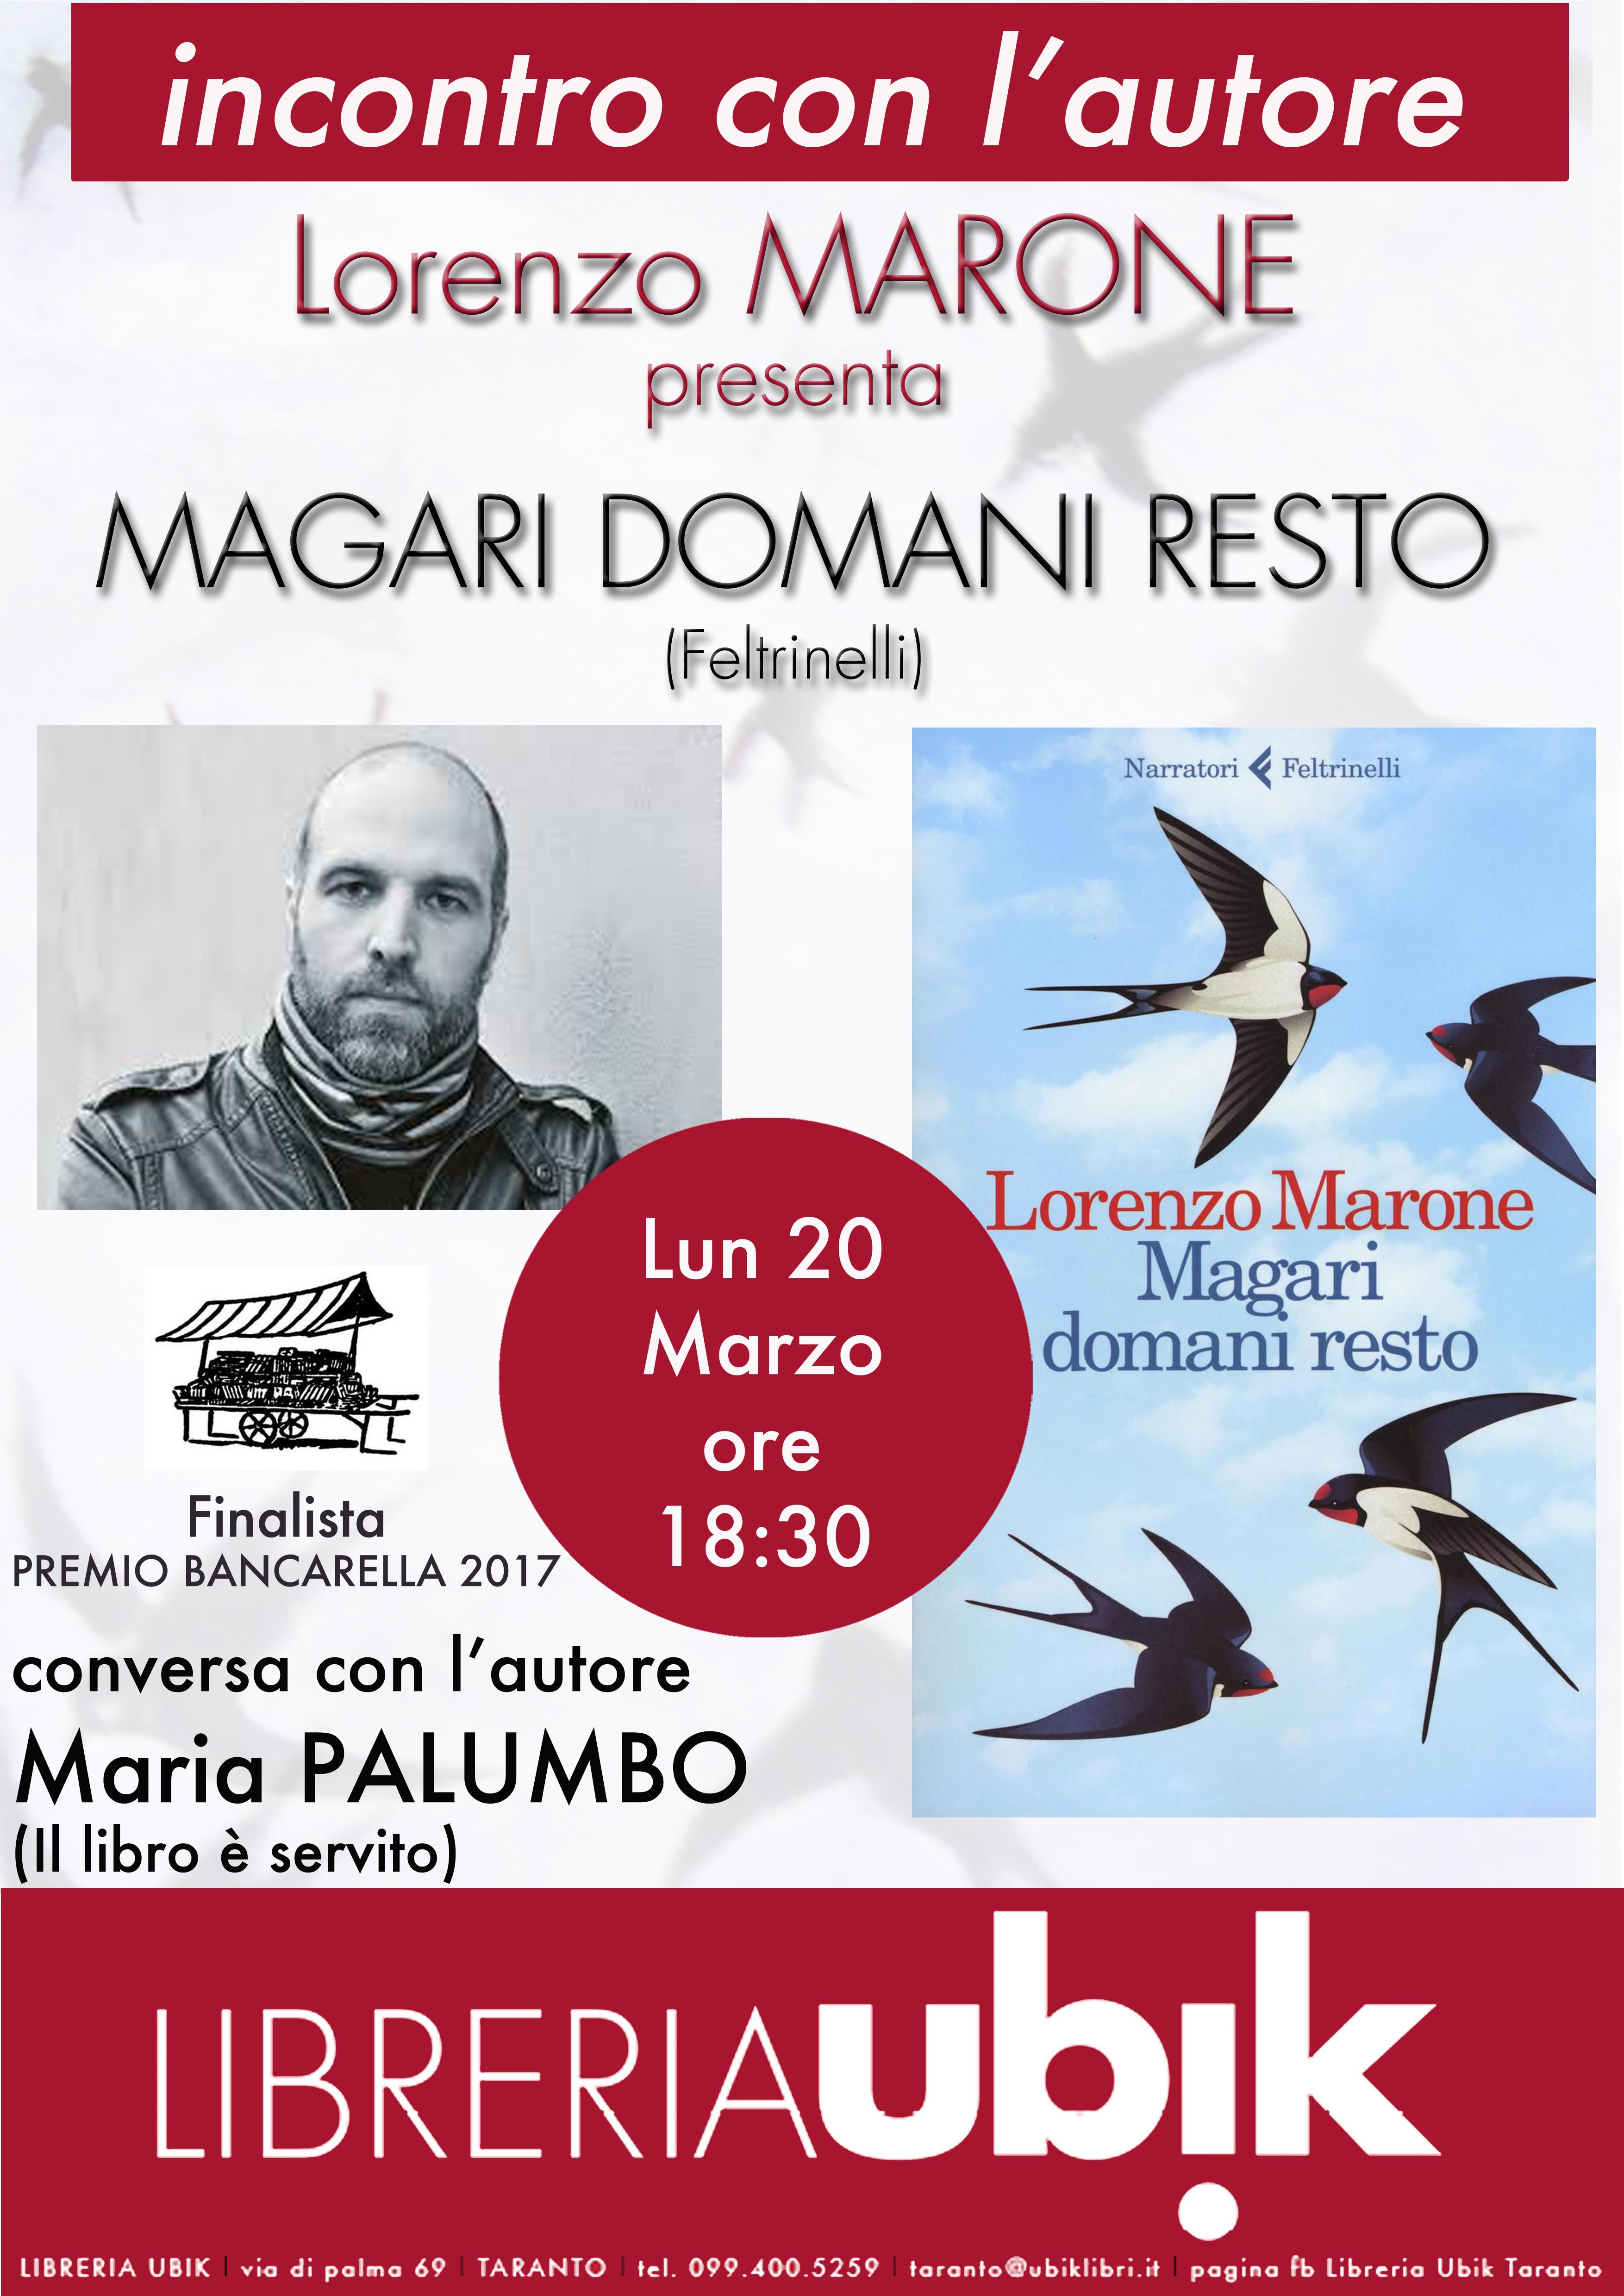 TARANTO. Libreria Ubik. Lorenzo Marone presenta il suo ultimo romanzo “Magari domani resto”, edito da Feltrinelli